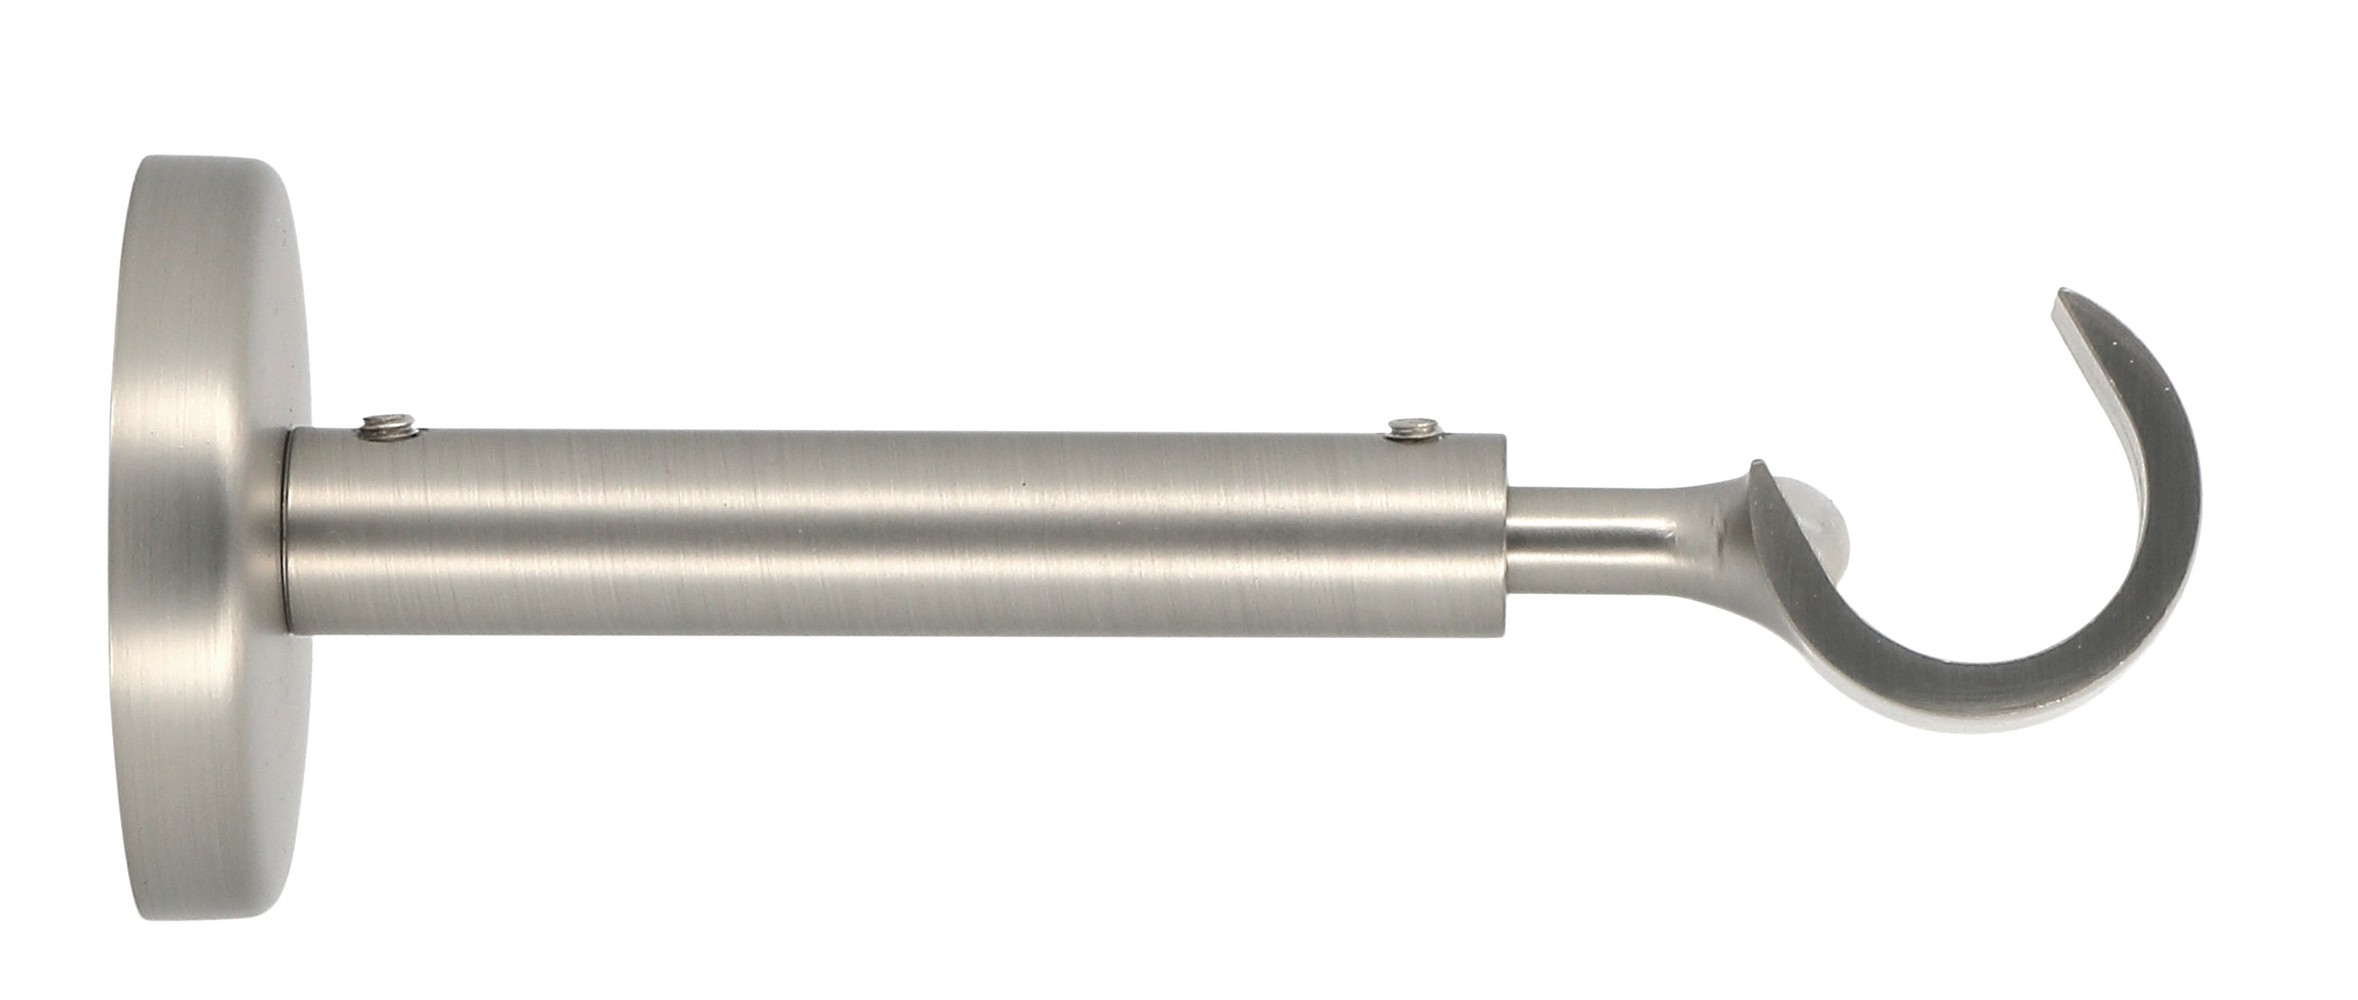 Support de barre à rideau en métal Ø20 ouvert 110-150 mm chromé mat